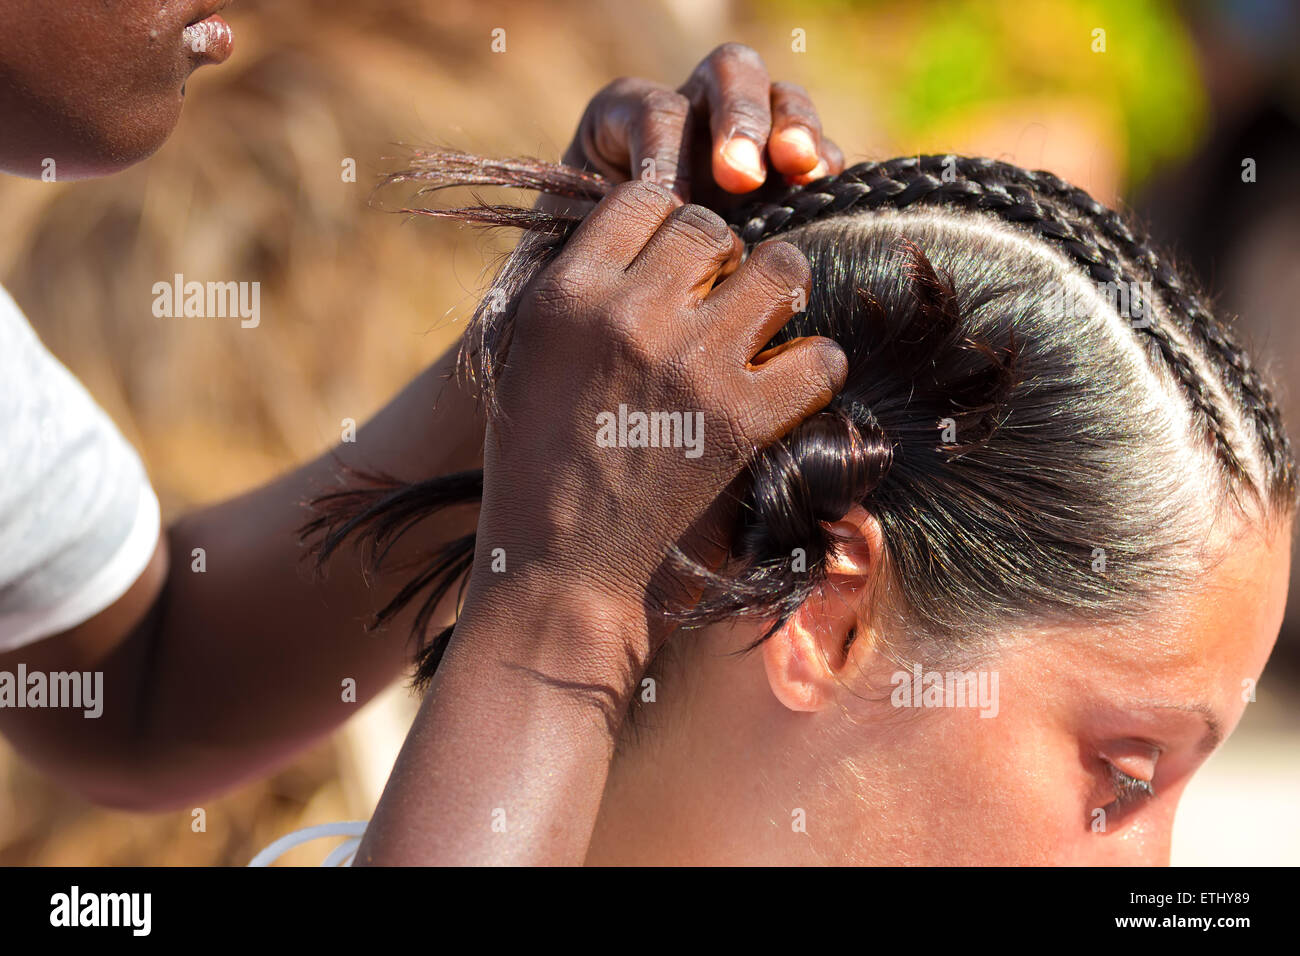 Traditionelle Afrikanische Frisuren Auf Weisse Frauen Stockfotografie Alamy